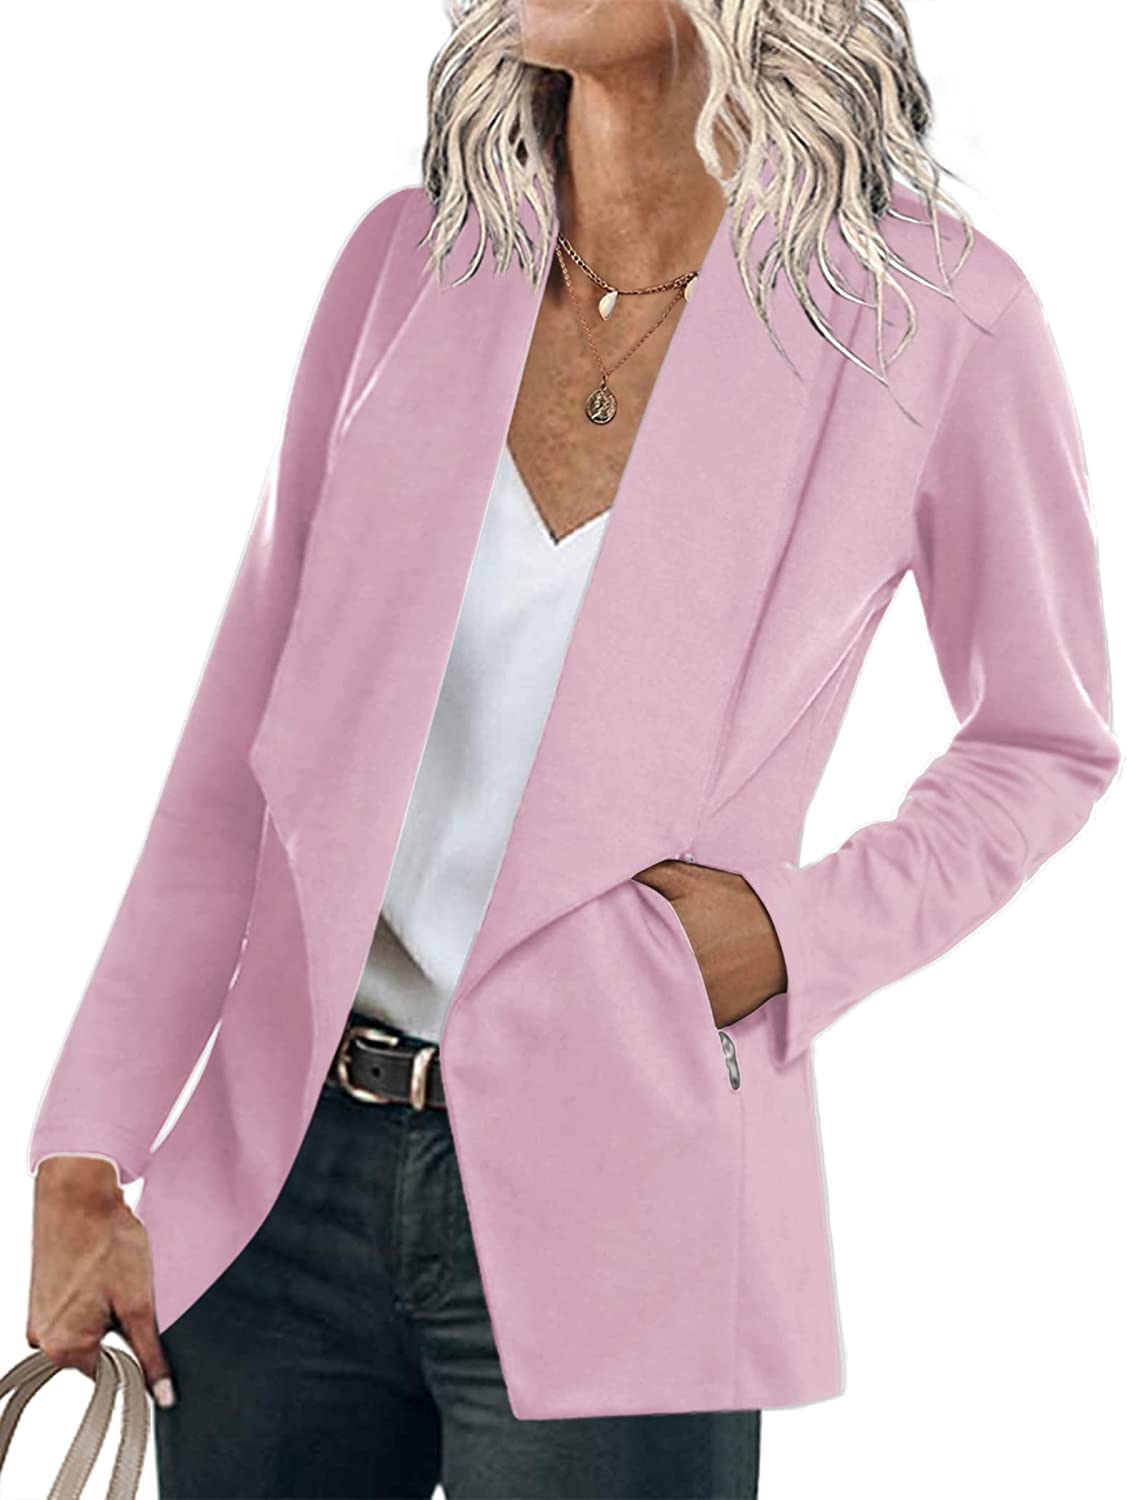 ELESOL Blazer Jackets for Women Long Sleeve Open Front Business